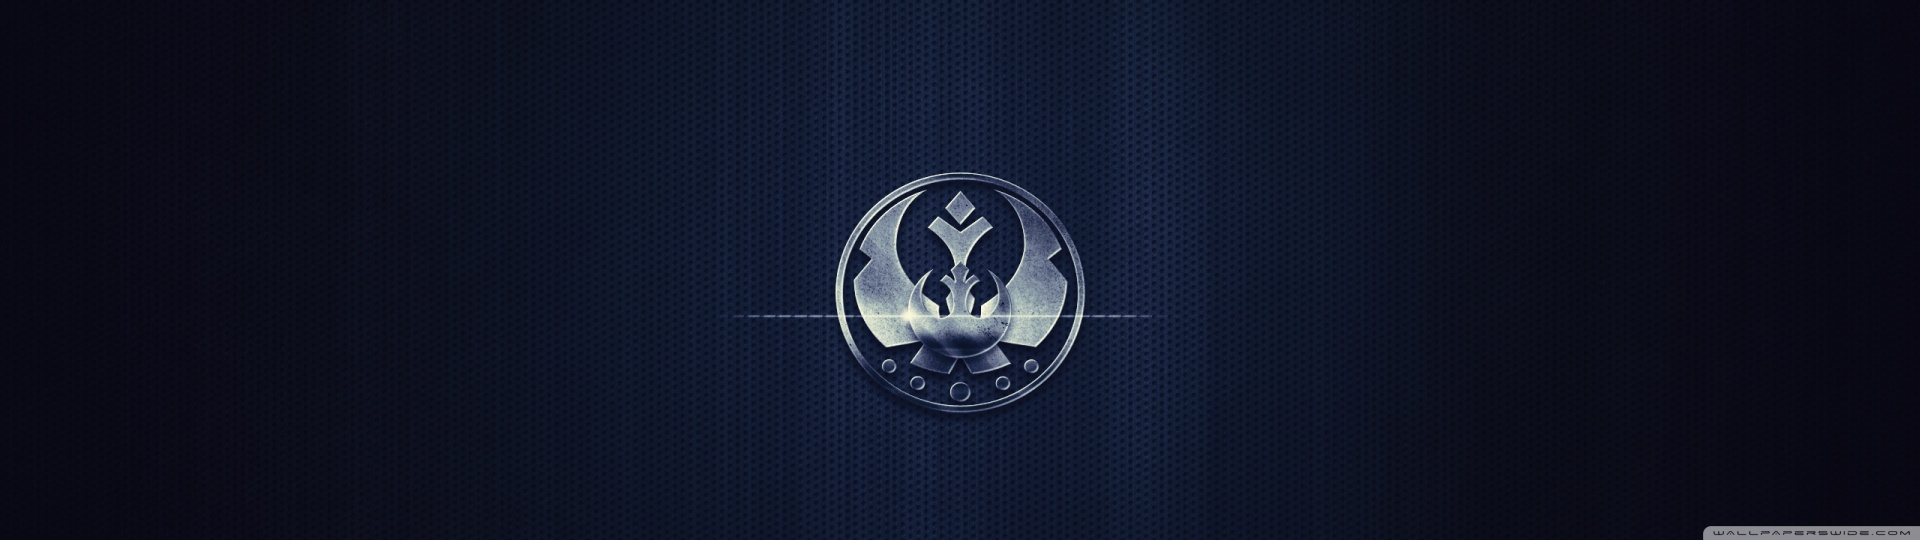 Emblem - HD Wallpaper 